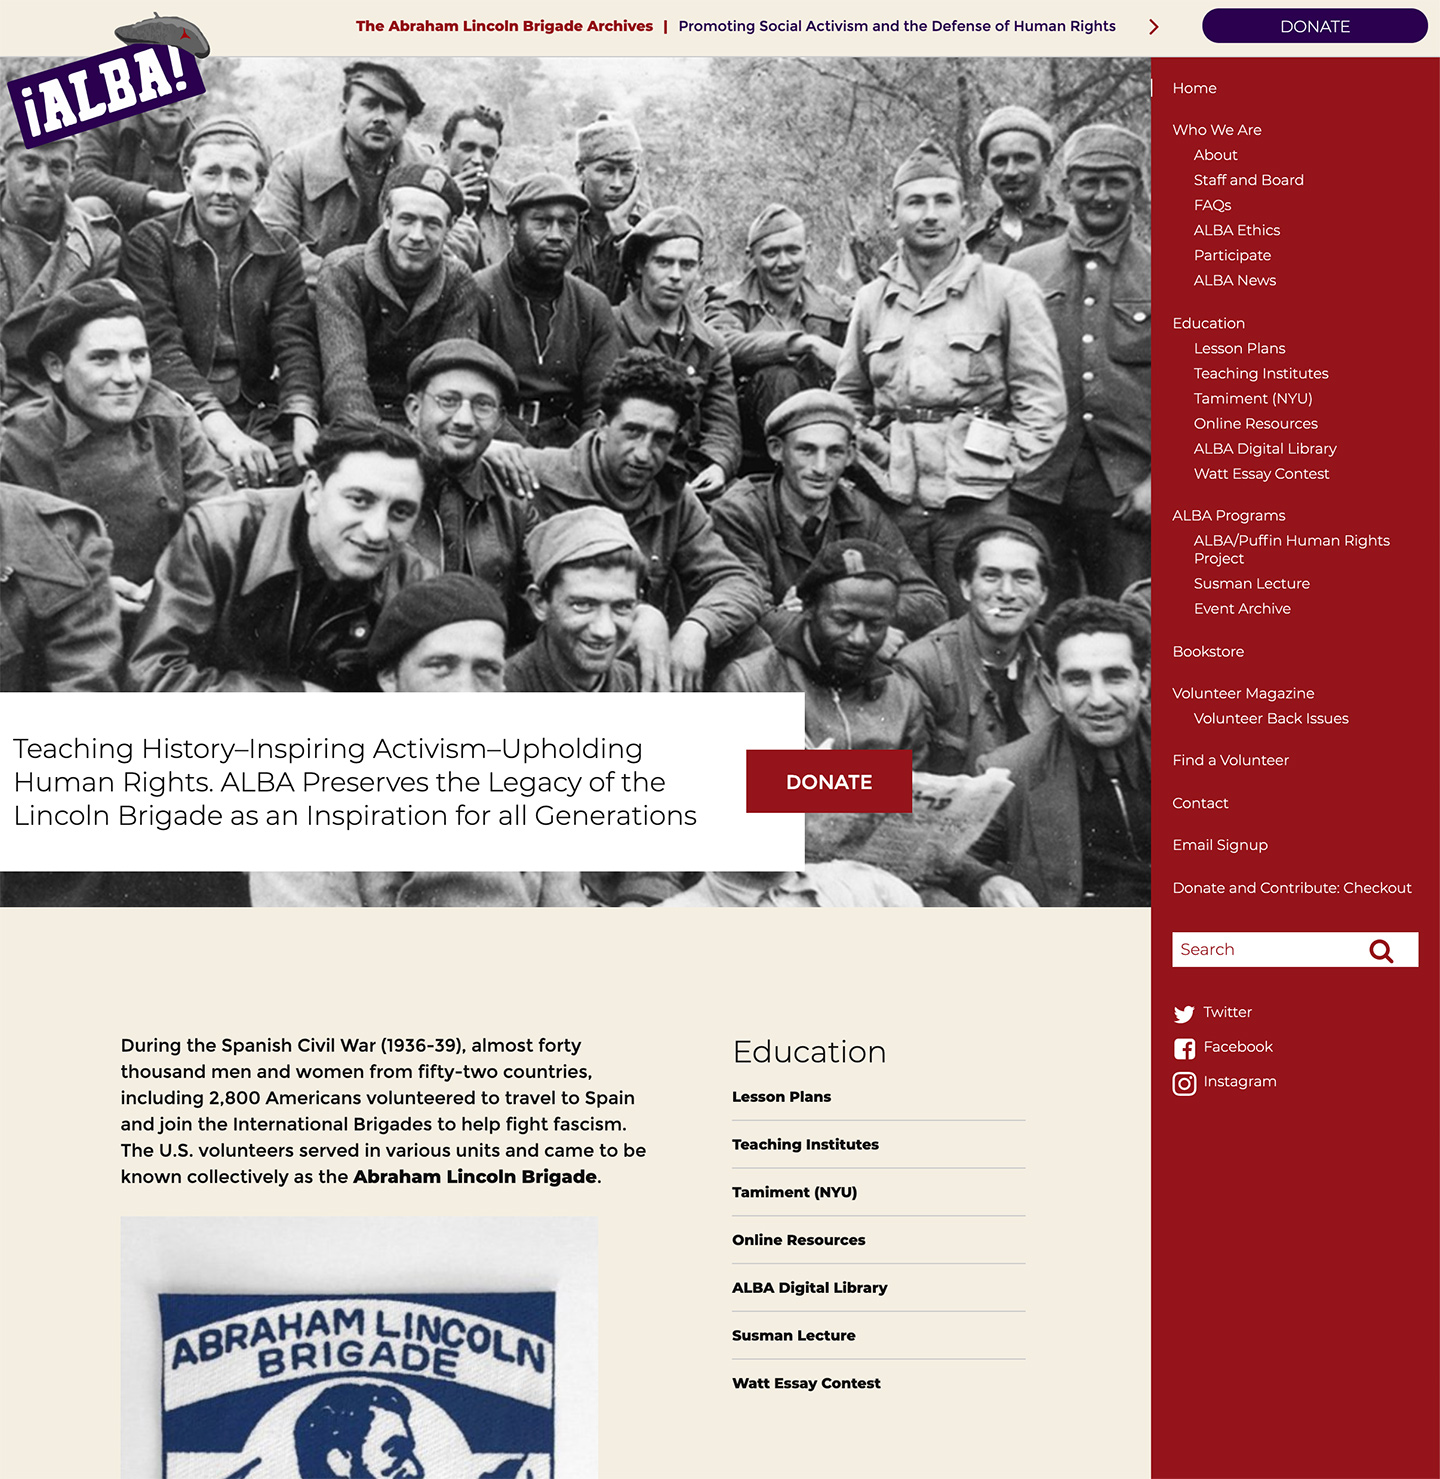 The Abraham Lincoln Brigade Archives (ALBA)